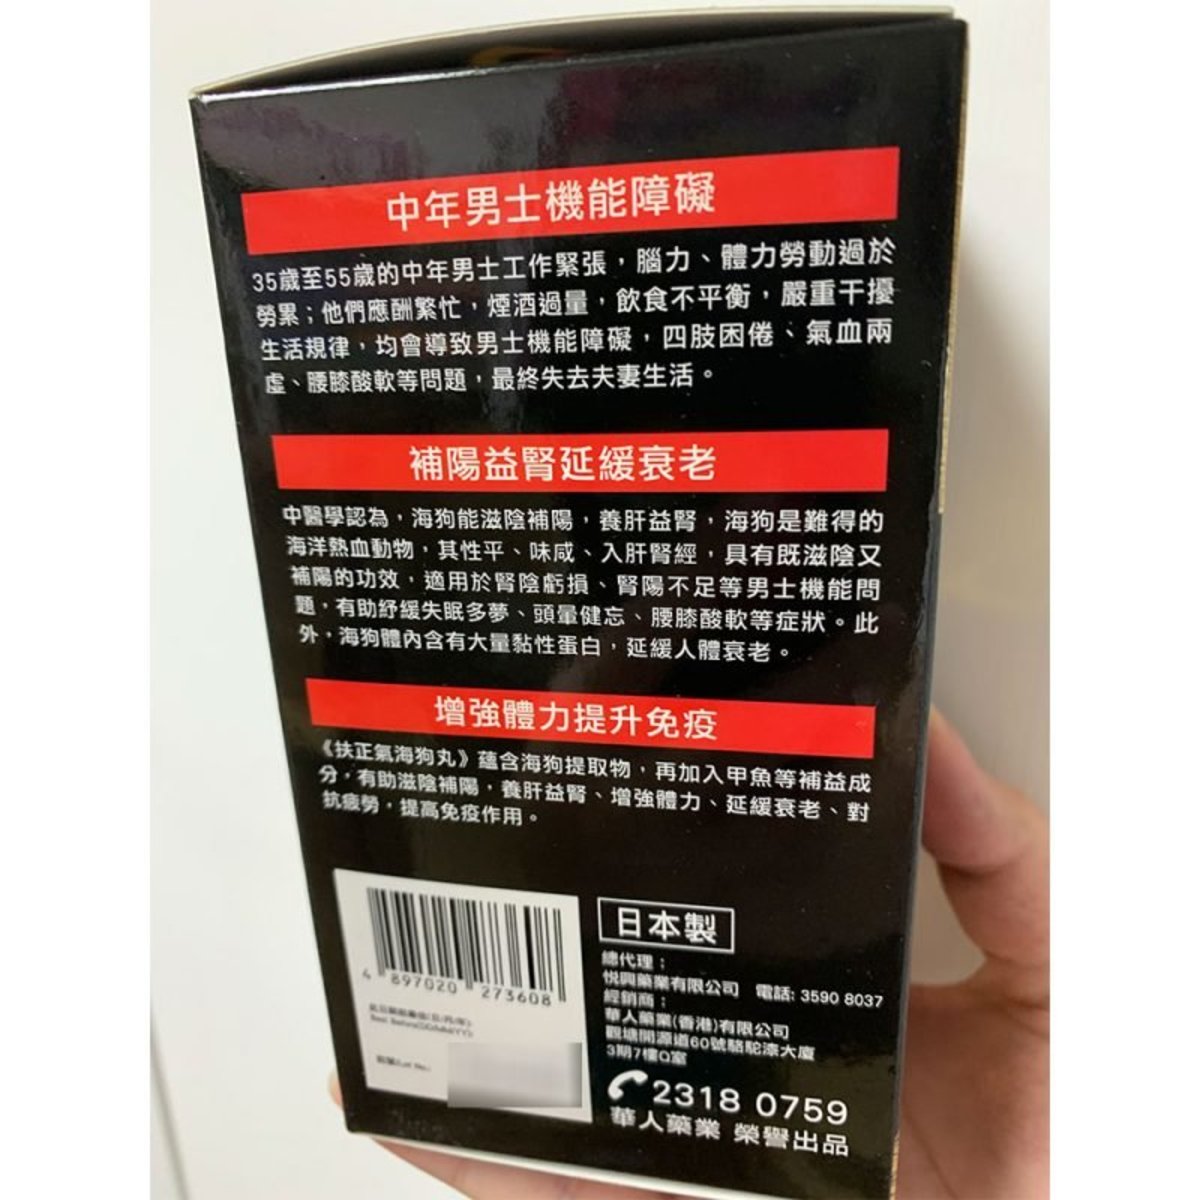 Fuzhengqi- Fuzhengqi Sea Dog Pills (150 capsules) 